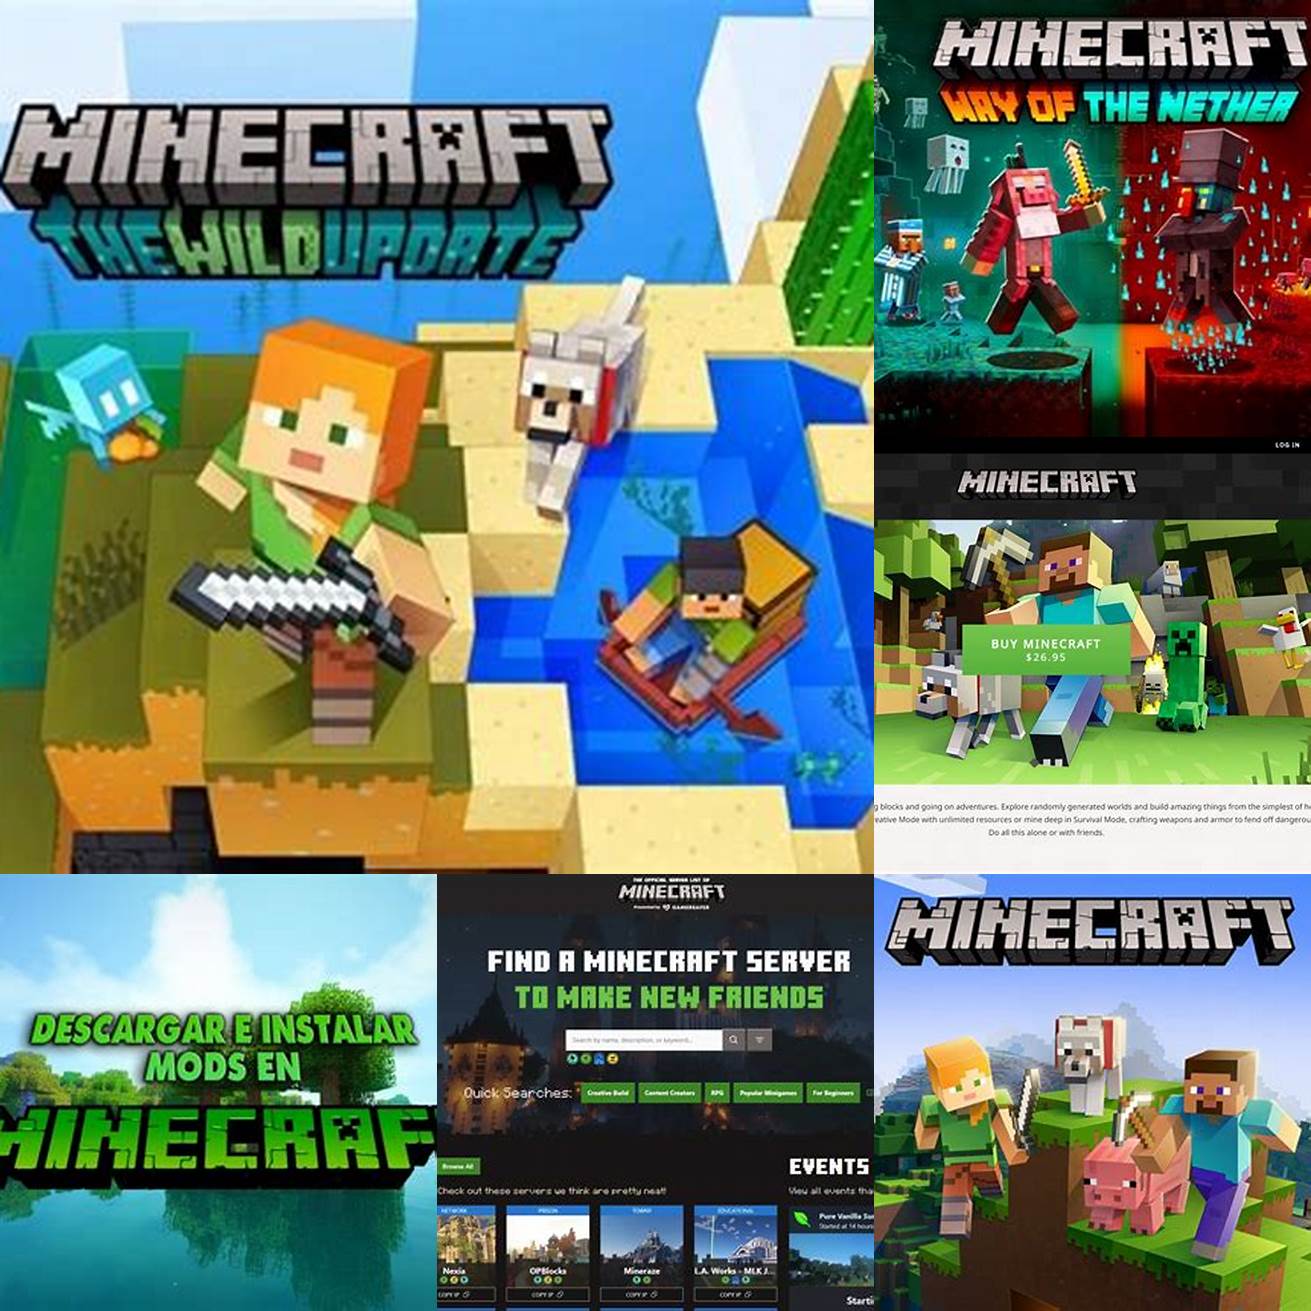 1 Kunjungi situs web resmi Minecraft untuk mengunduh mod apk